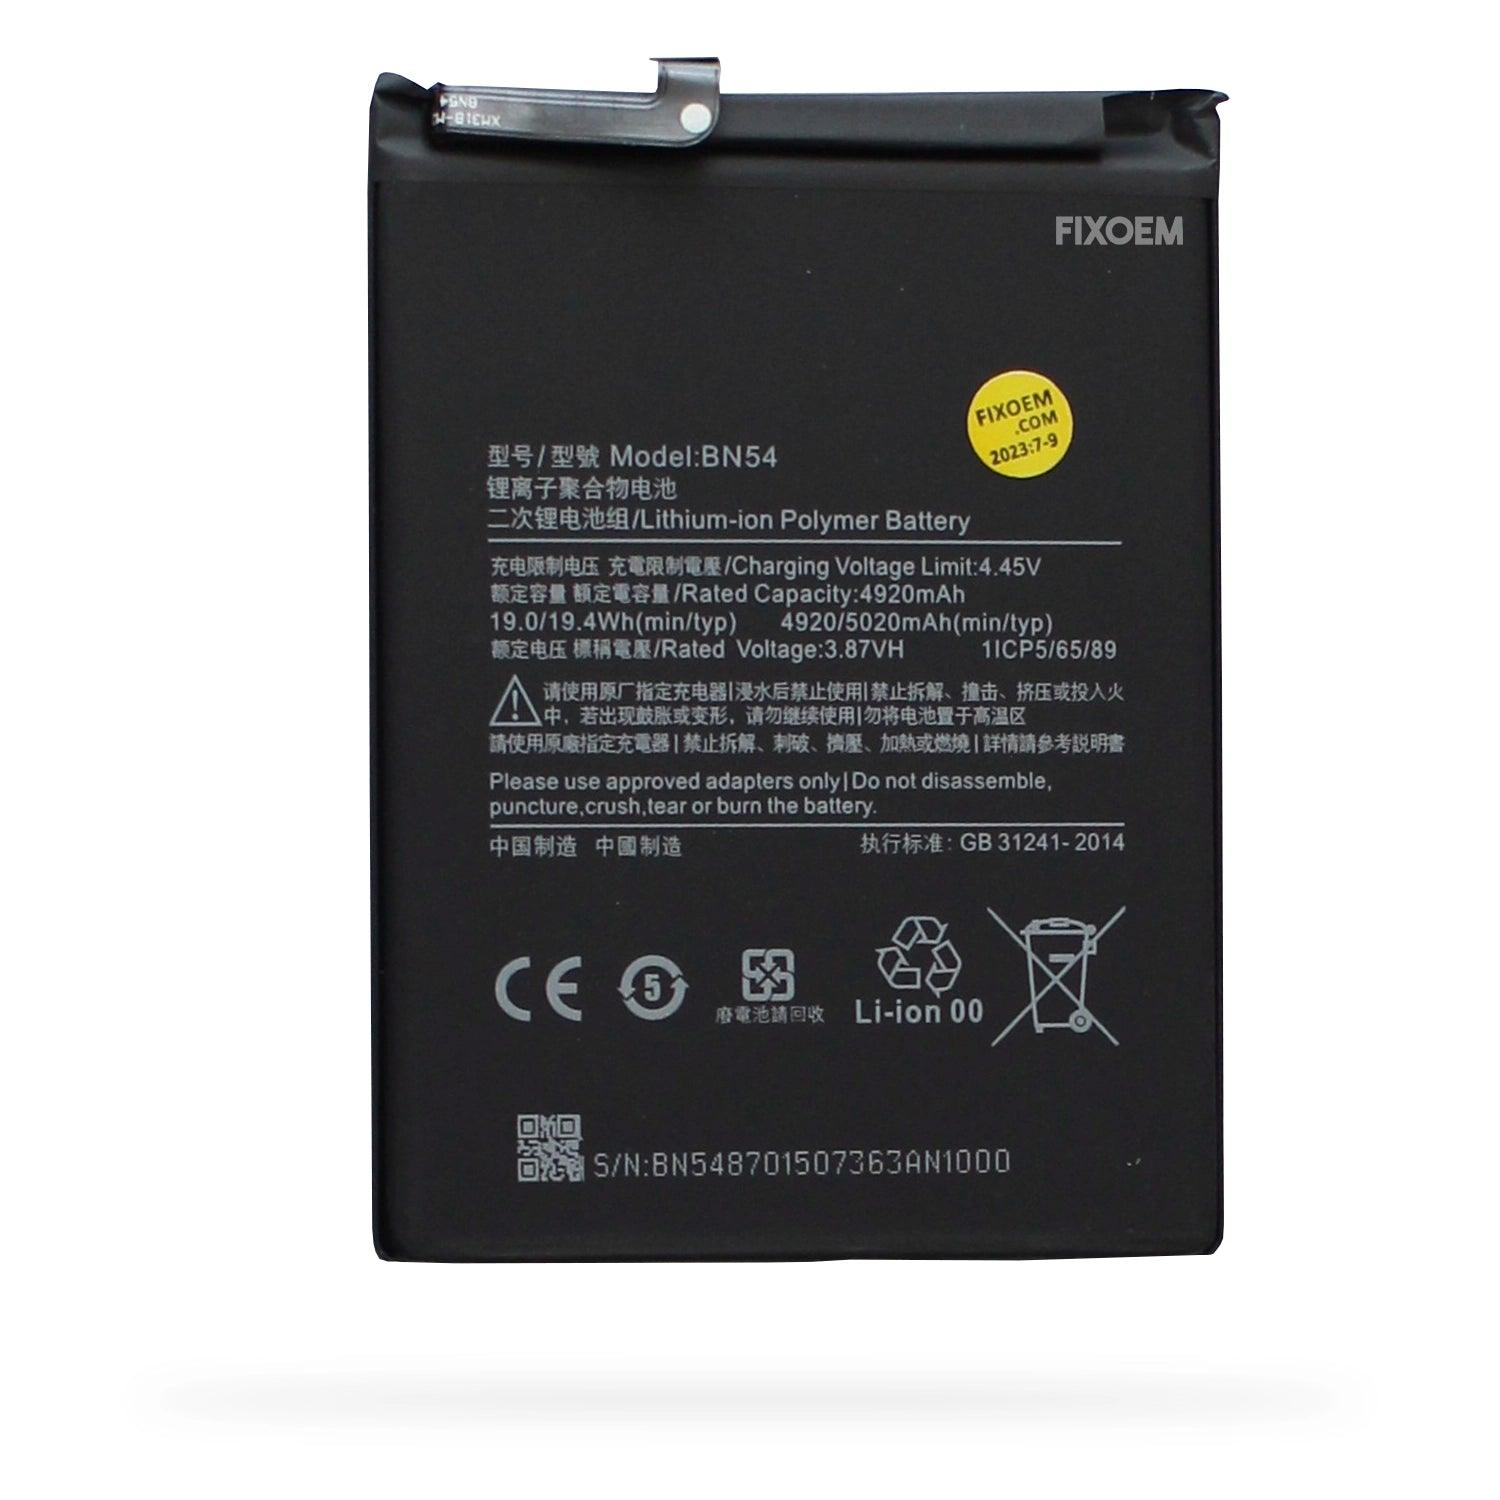 Bateria Xiaomi Redmi Note 9/ Redmi 9 / Redmi 10 X-4G edition/ POCO M2 /Redmi 9 Prime Bn54 a solo $ 140.00 Refaccion y puestos celulares, refurbish y microelectronica.- FixOEM